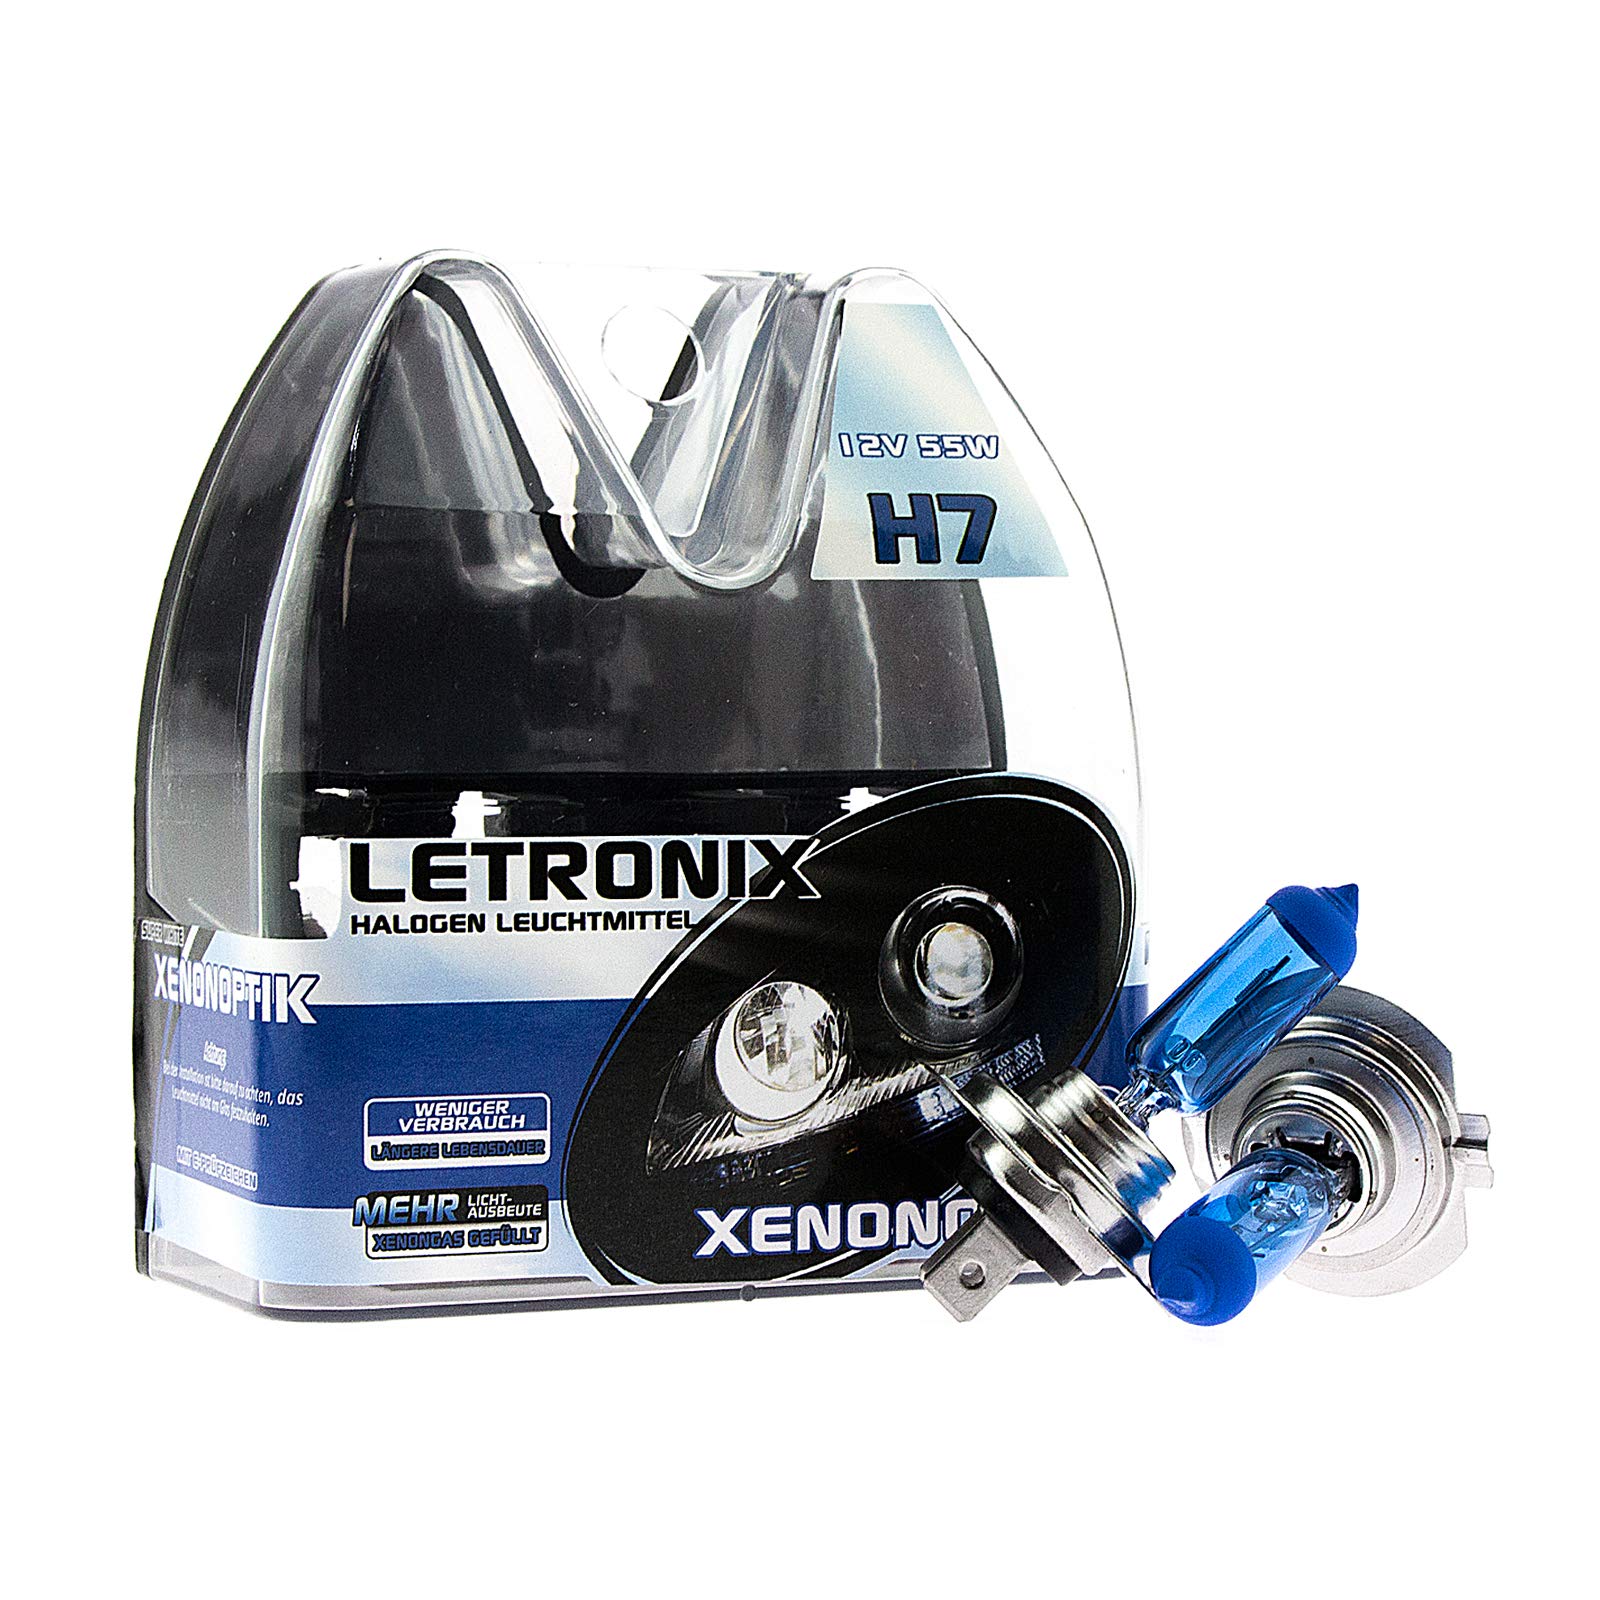 LETRONIX Halogen Auto Lampen H7 12V 8500K Kalt Weiß Xenon Optik Gas Ultra White Look Birnen Lampe Abblendlicht Nebelscheinwerfer Fernlicht Kurvenlicht Zulassung E-Prüfzeichen (LED Optik) (H7 55W) von letronix